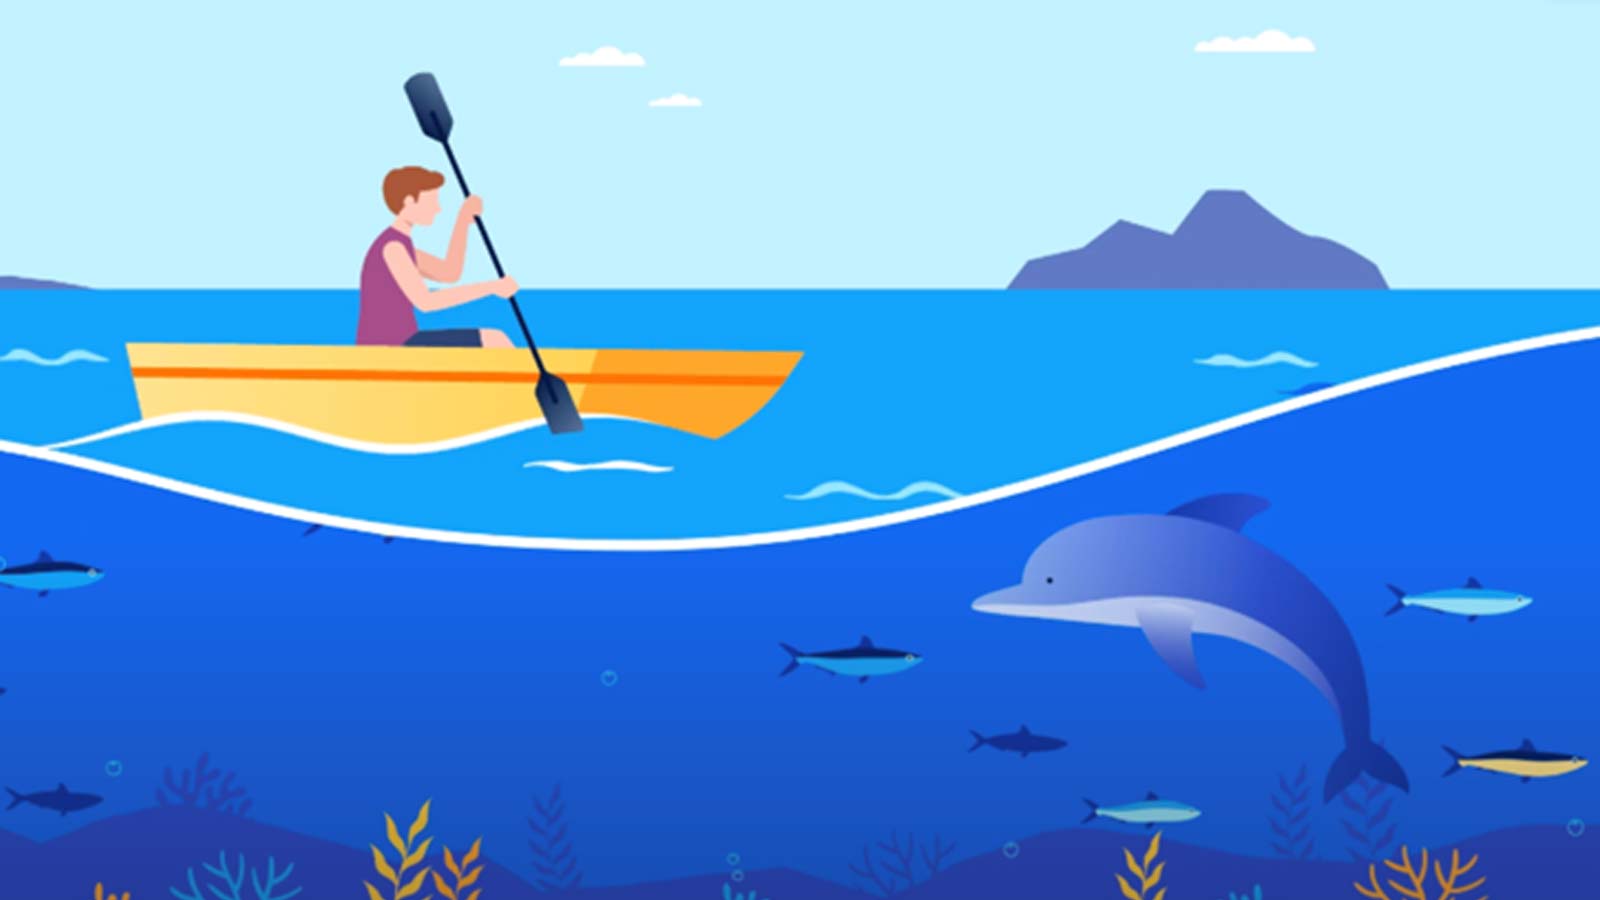 Animation of man in kayak